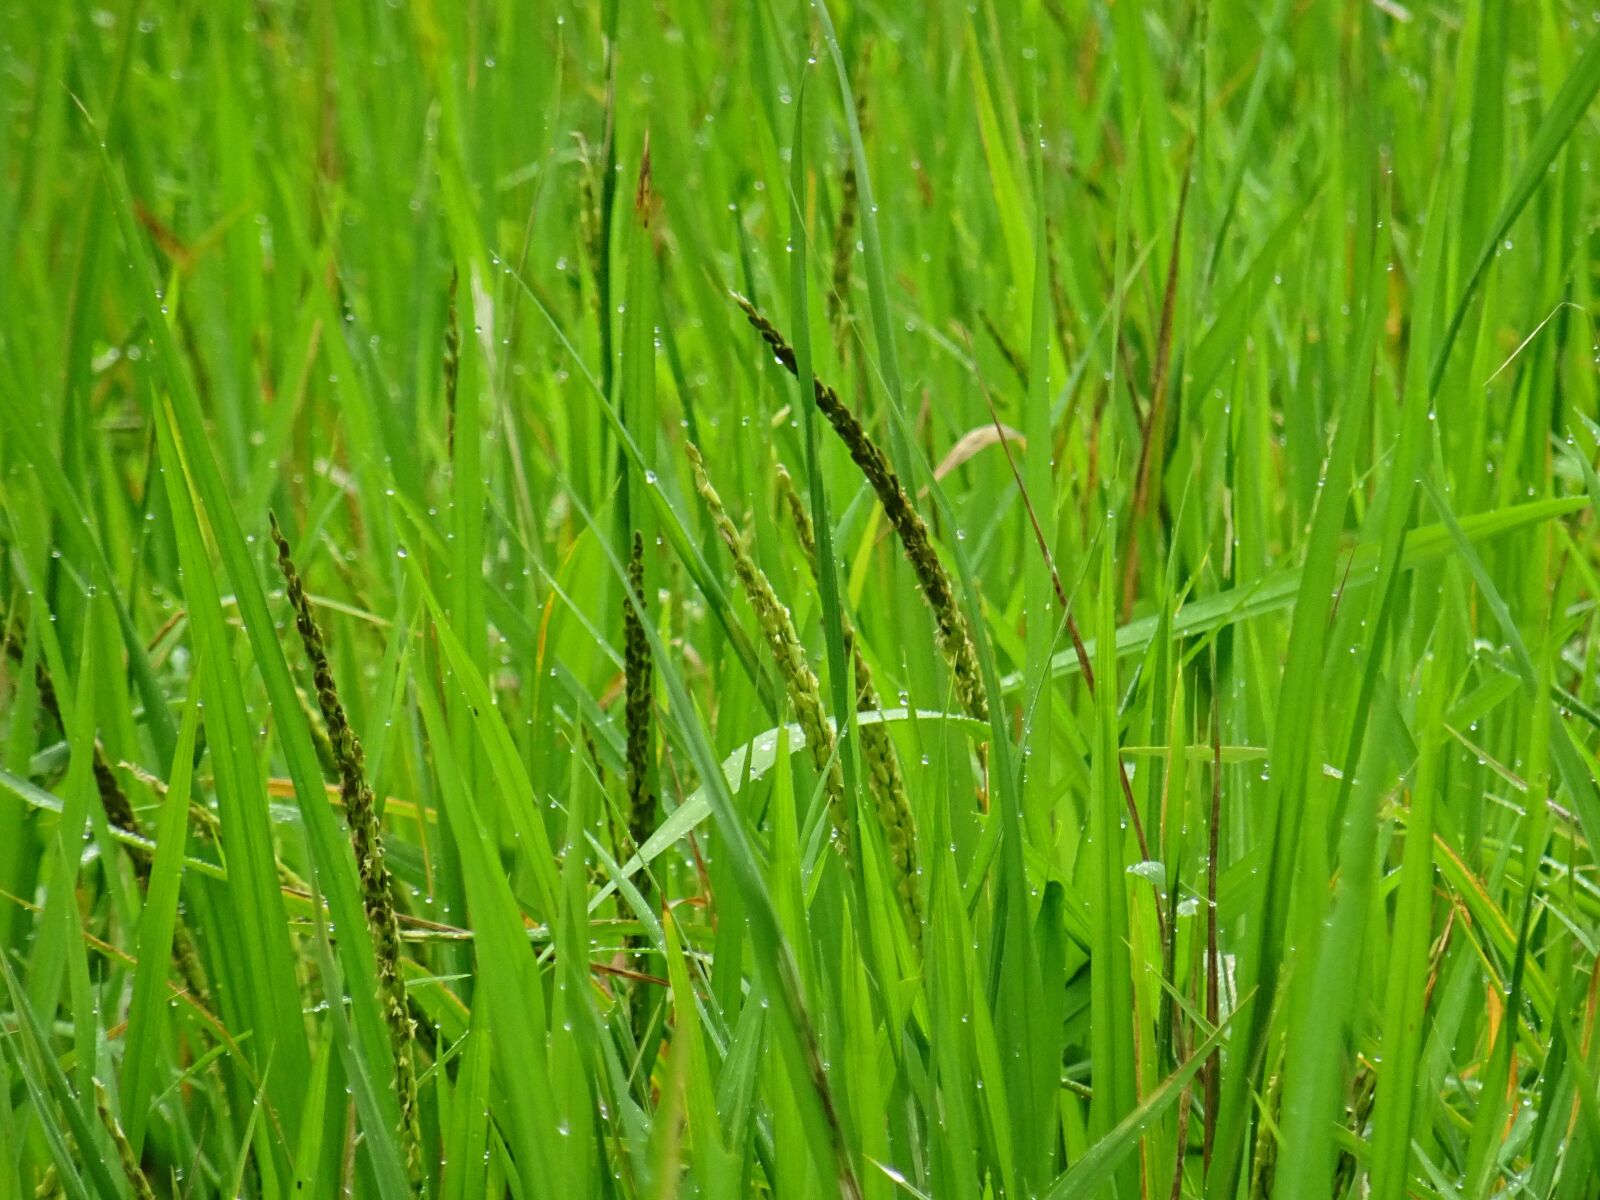 Sony DSC-HX60V sample photo. Rice, rice fields, vietnam photography